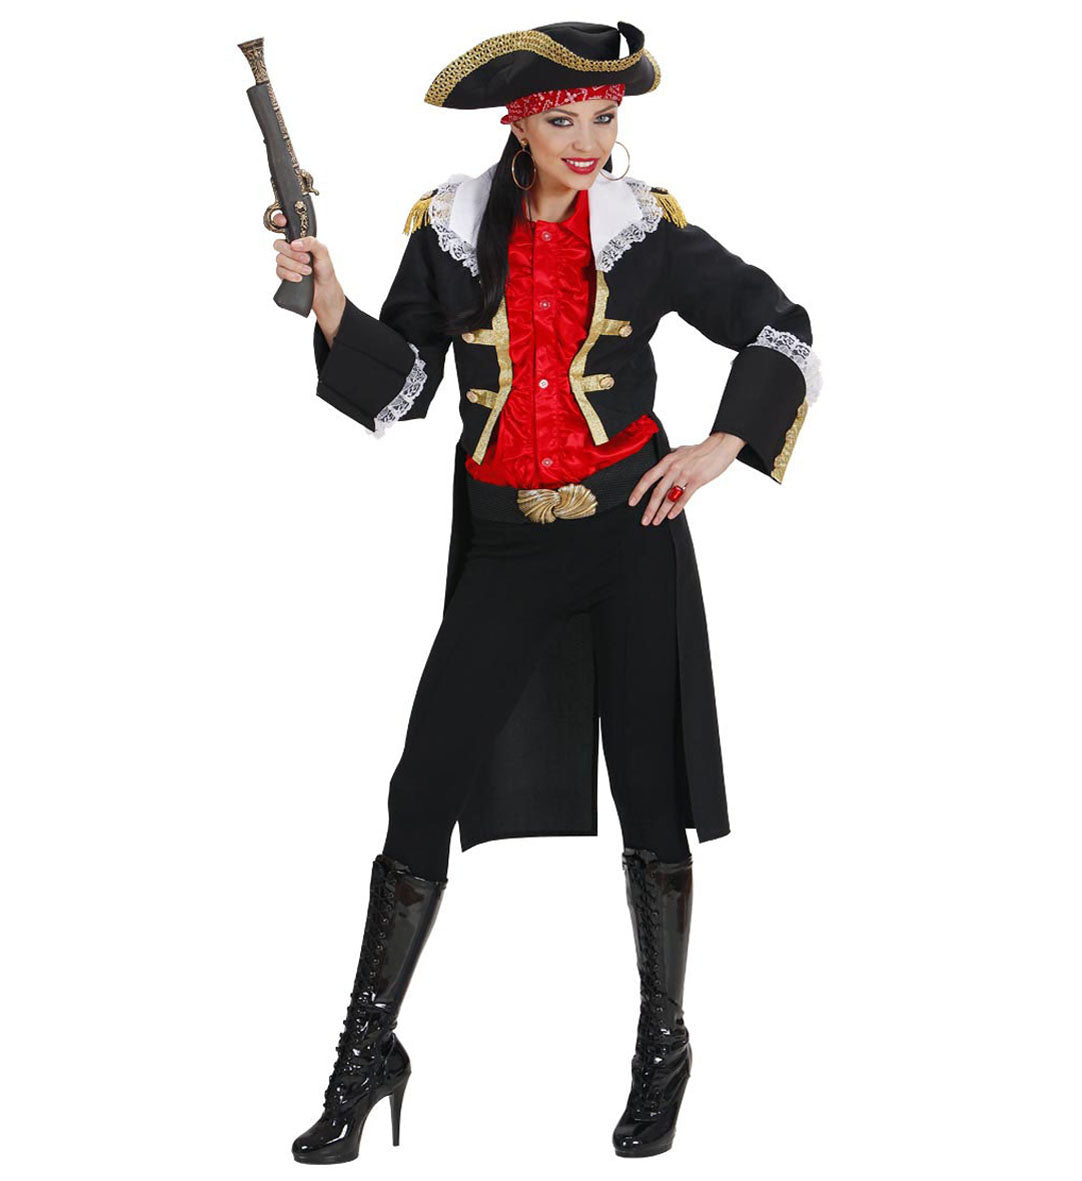 Widmann - Piraat & Viking Kostuum - Keurig Piratenkapitein Dame In Zwart Kostuum Vrouw - zwart - Small - Carnavalskleding - Verkleedkleding